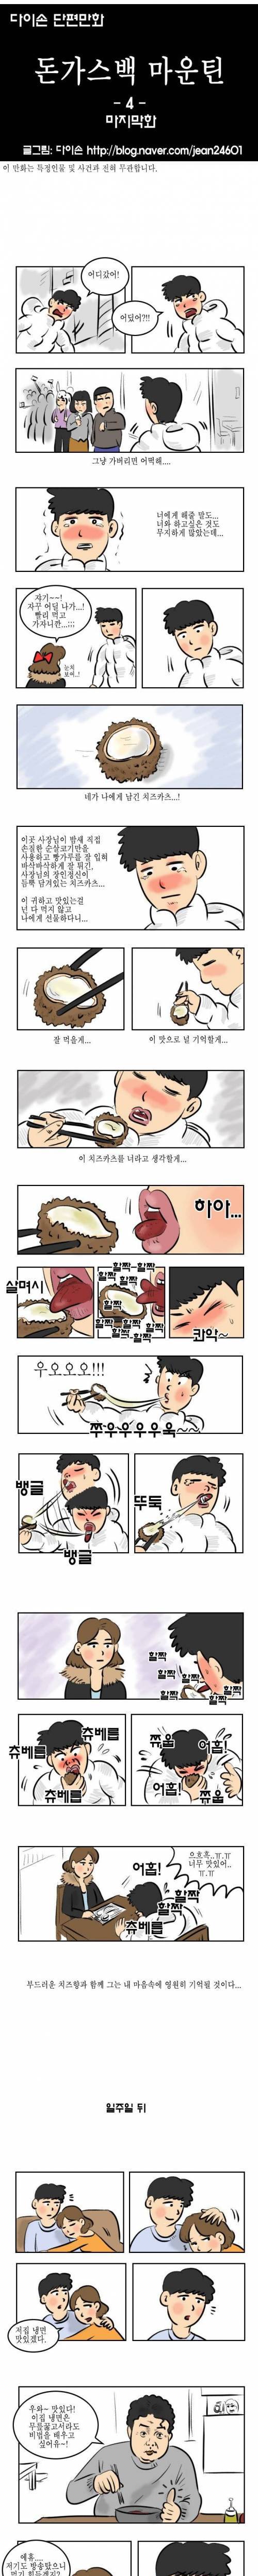 [스압] 포방터 돈가스 컴백기념.manhwa